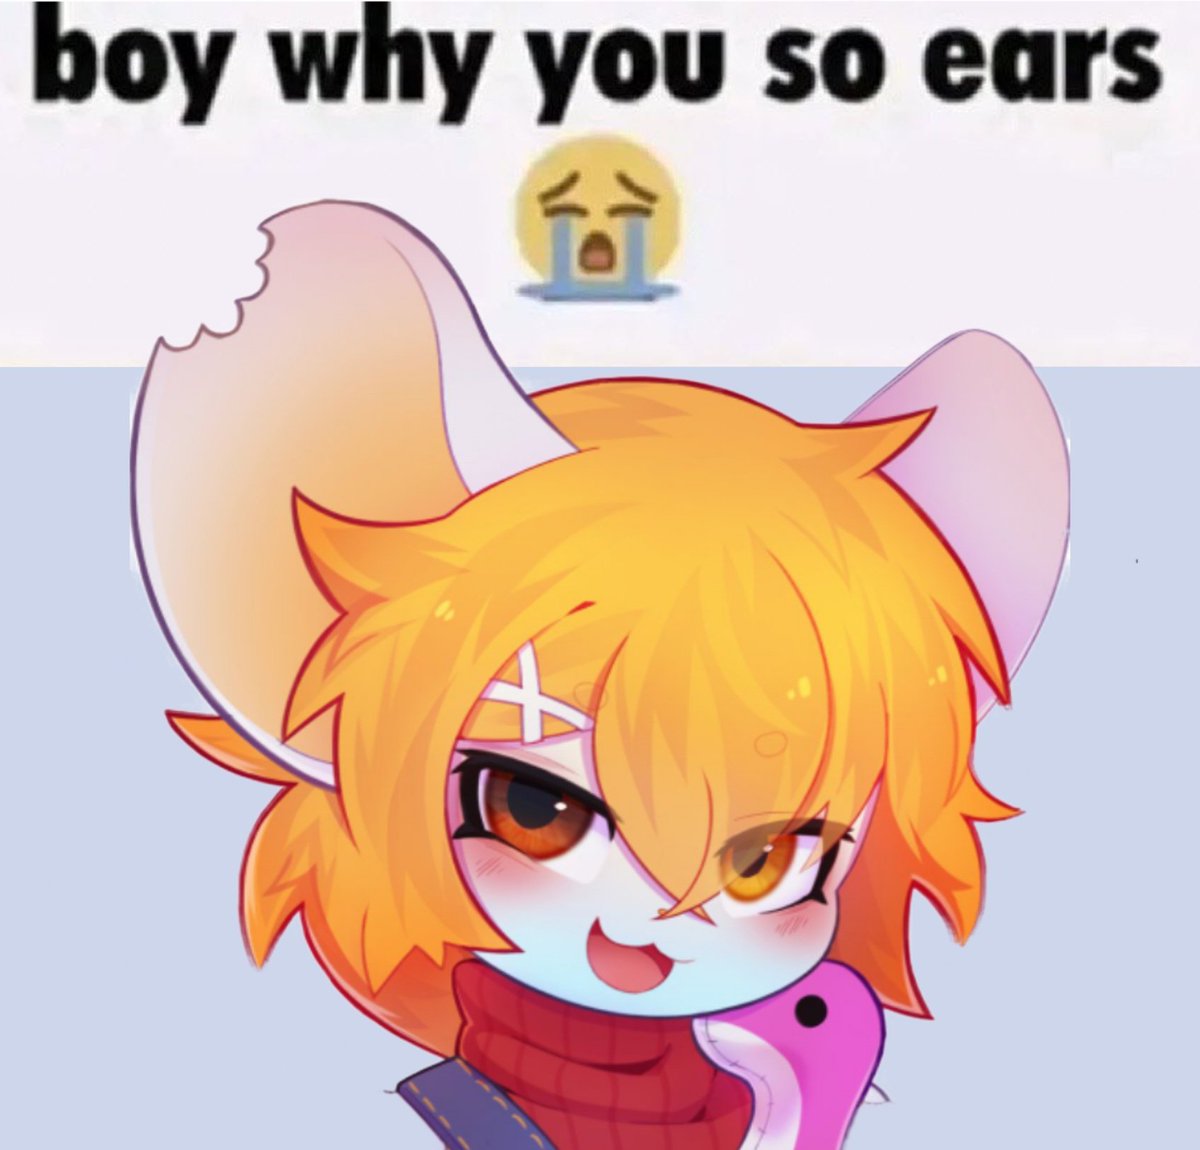 I like ears...